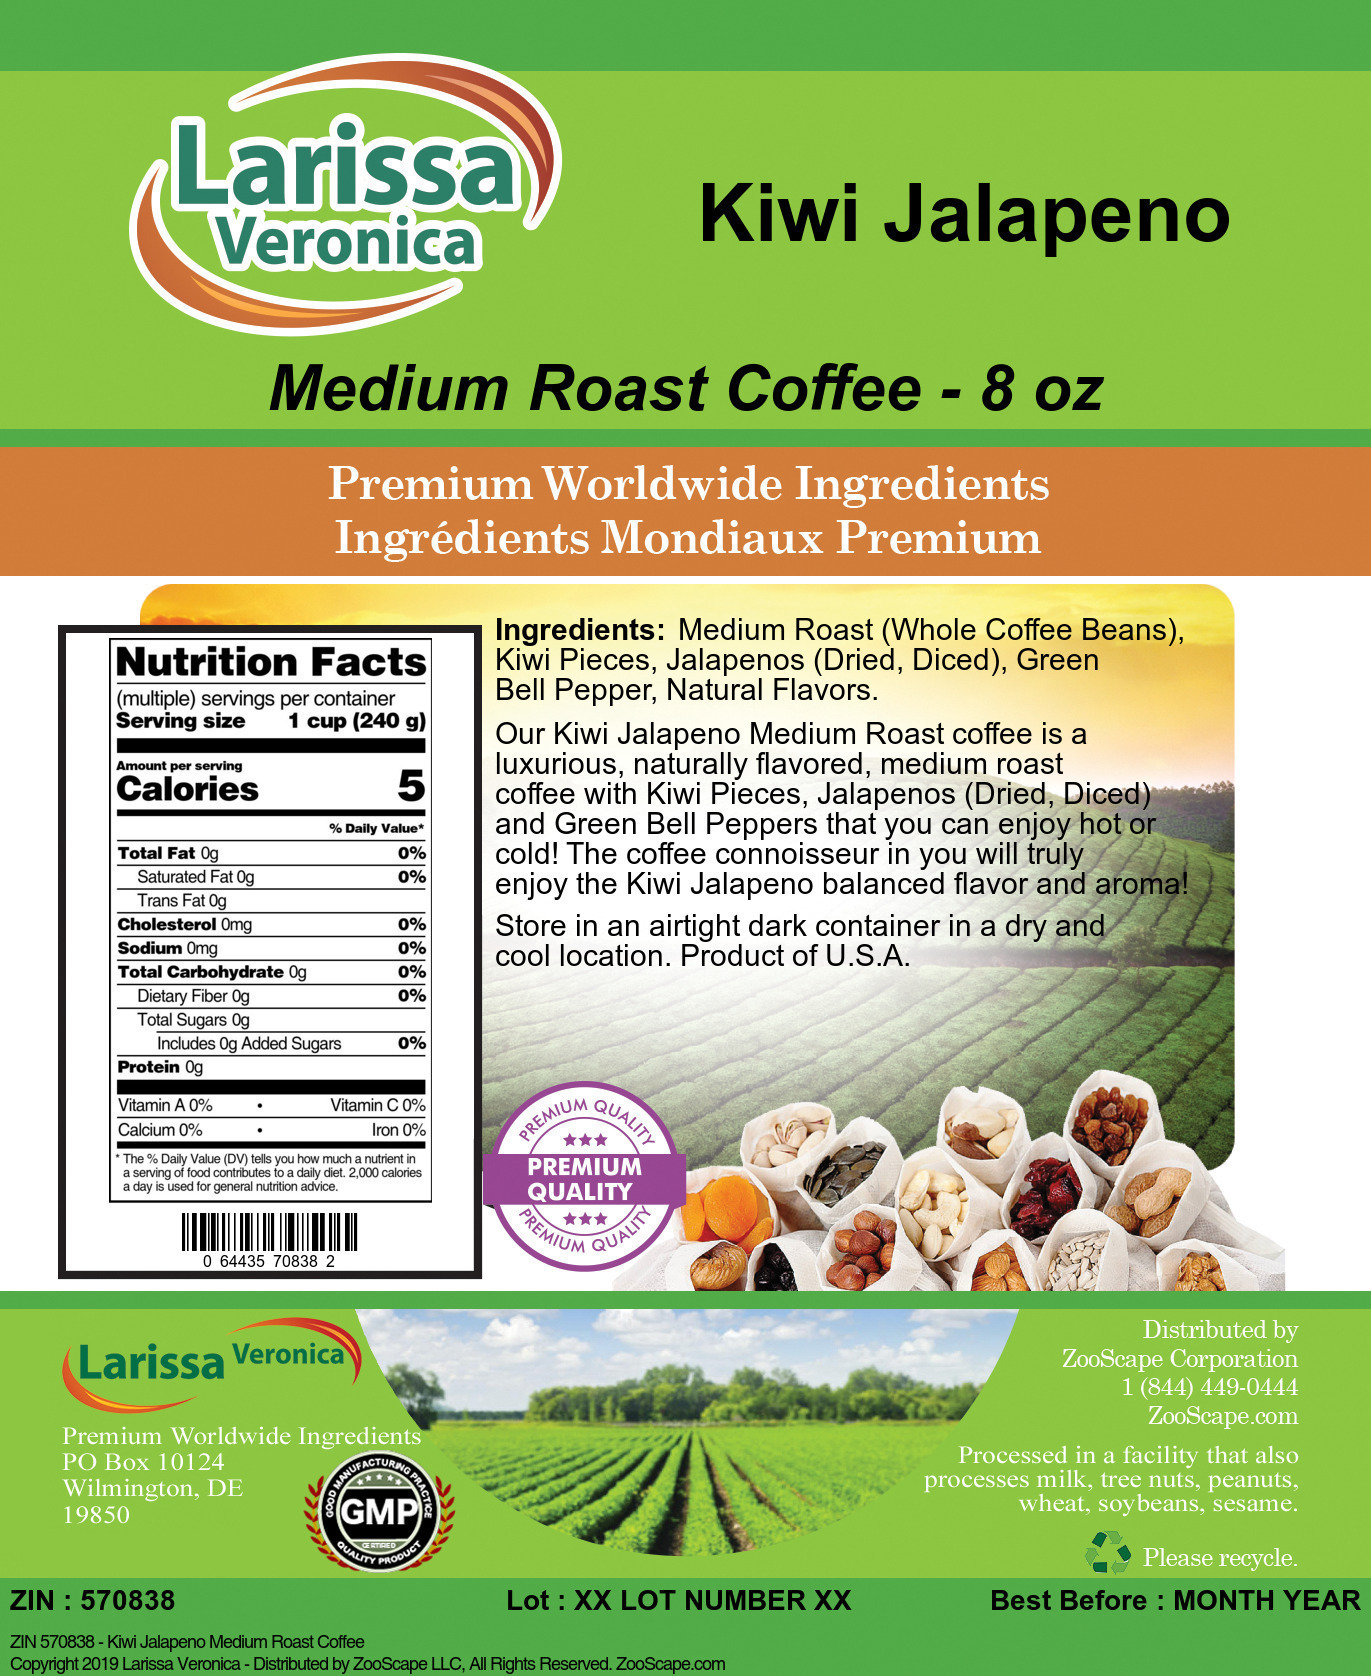 Kiwi Jalapeno Medium Roast Coffee - Label